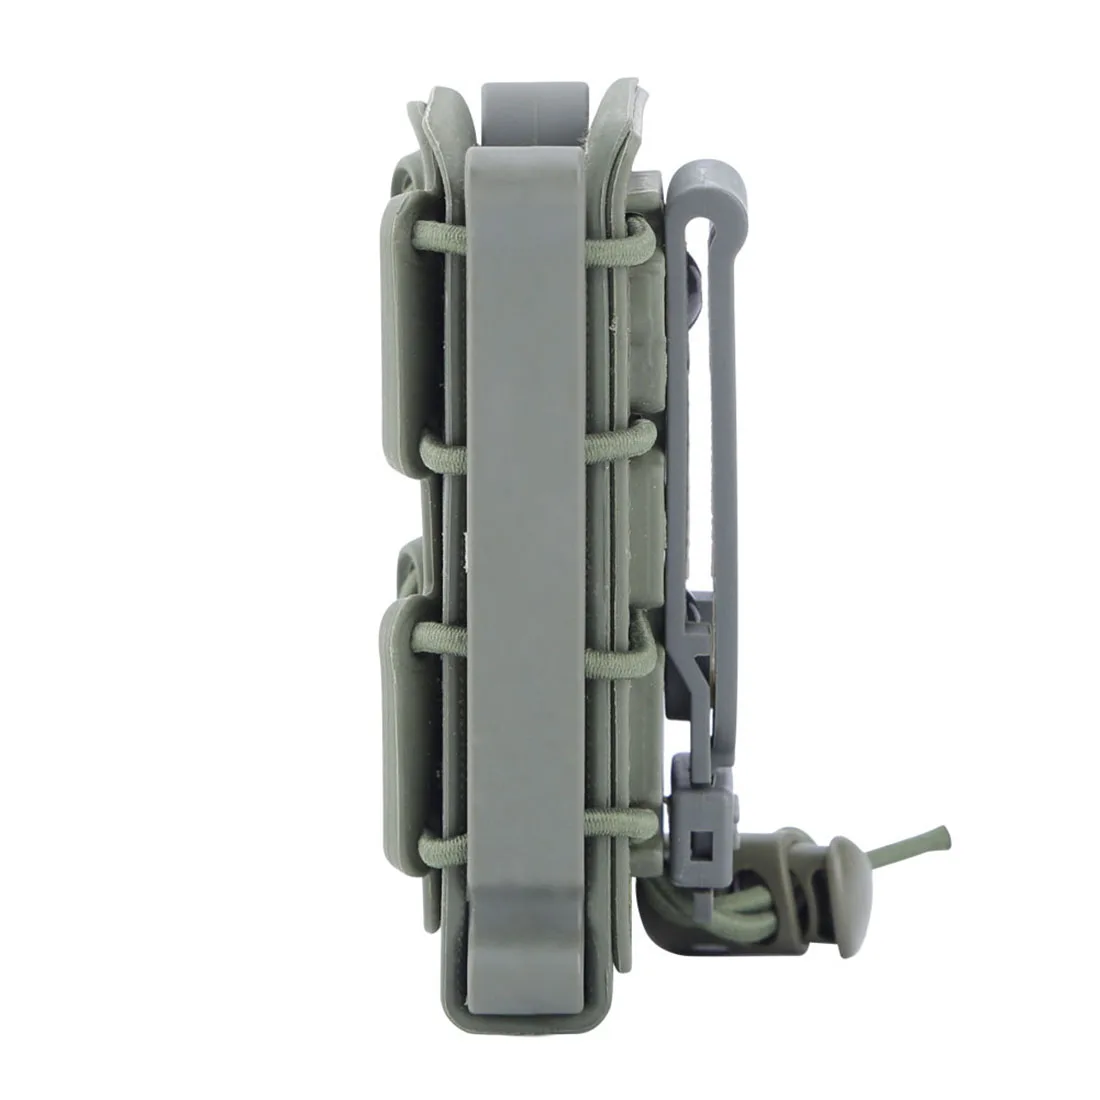 MODIKER WST 9 мм Гибкая TPR Скорпион подсумок крепежный элемент для магазина для 9 мм Люгер/. 45 АСР Mag для 5,56 и 7,62 журналы-оливково-зеленый